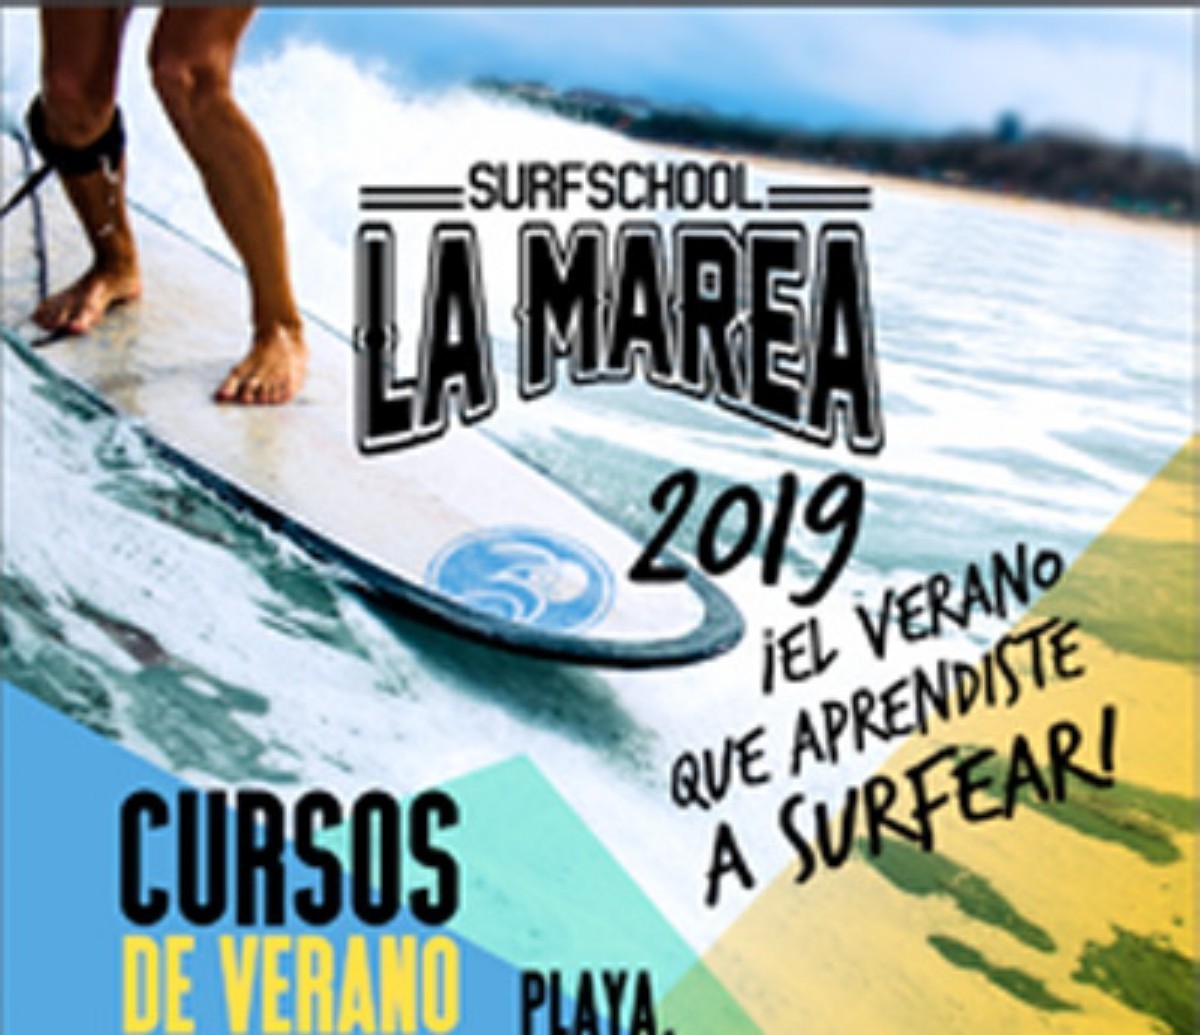 Curso de Verano. La Marea Surf Shool 2019 - Puerto de la Cruz